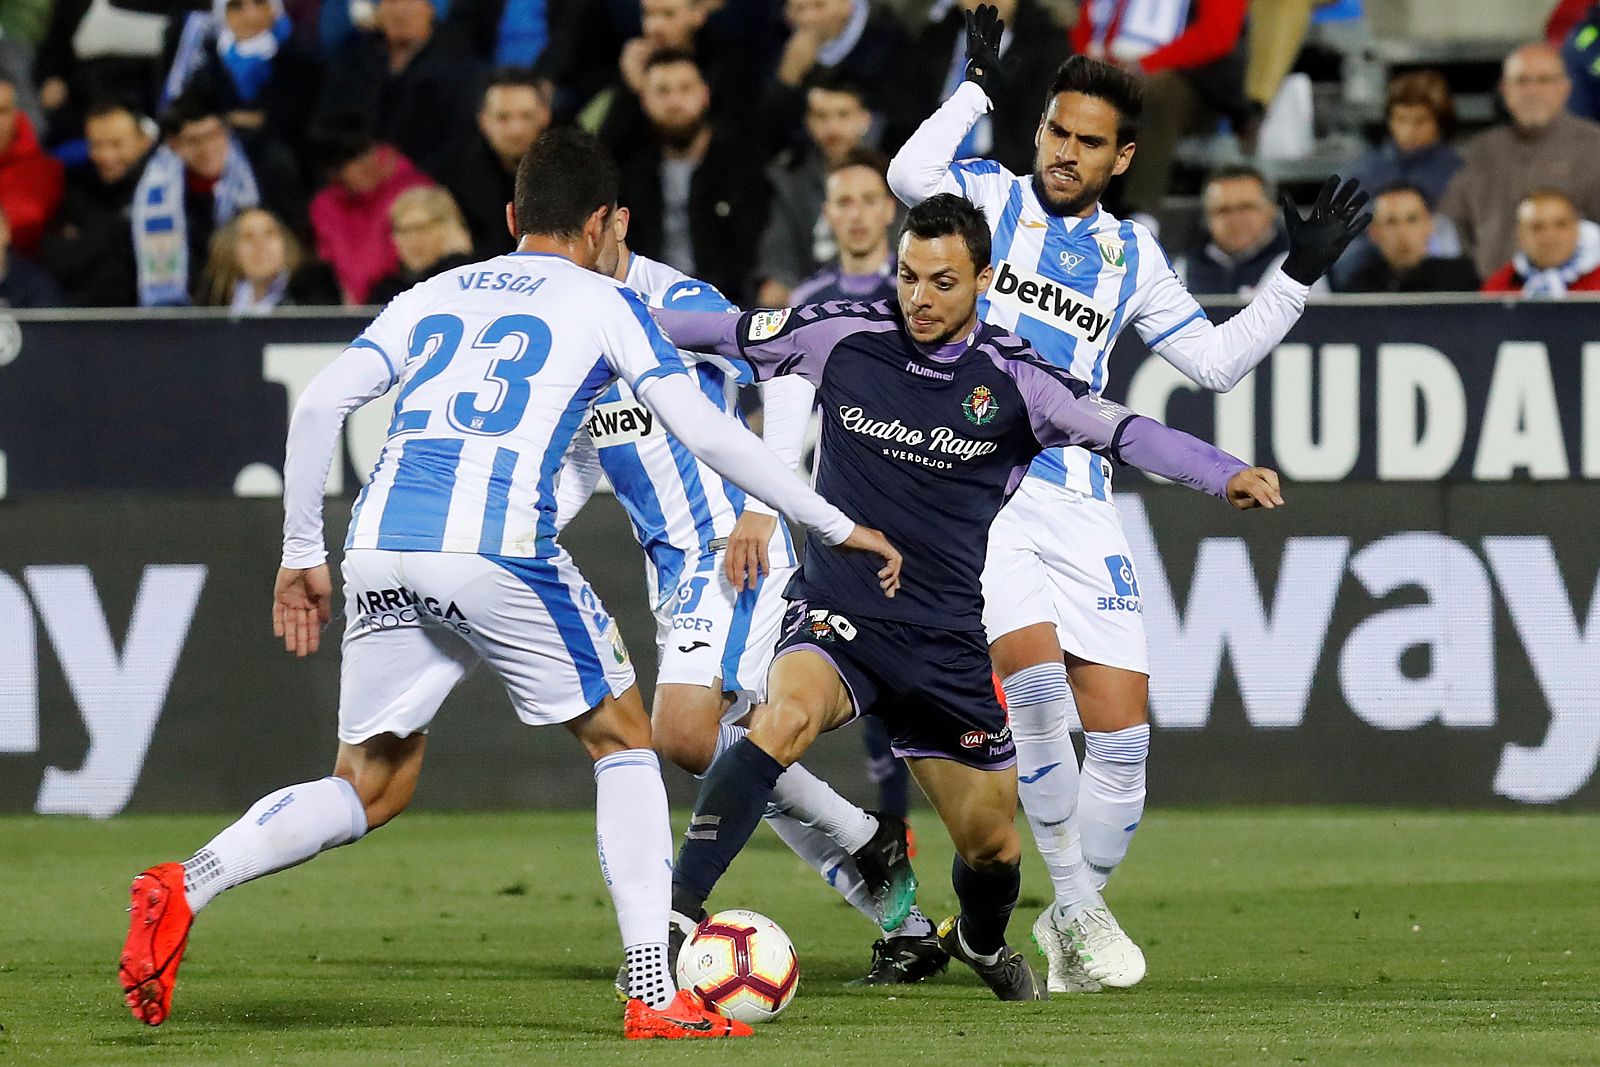 El centrocampista del Real Valladolid, Óscar Plano (c), pelea un balón con Mikel Vesga (i) y José Luis "Recio" (d), ambos del Leganés, durante el partido de LaLiga que se disputa esta noche en el estadio de Butarque.